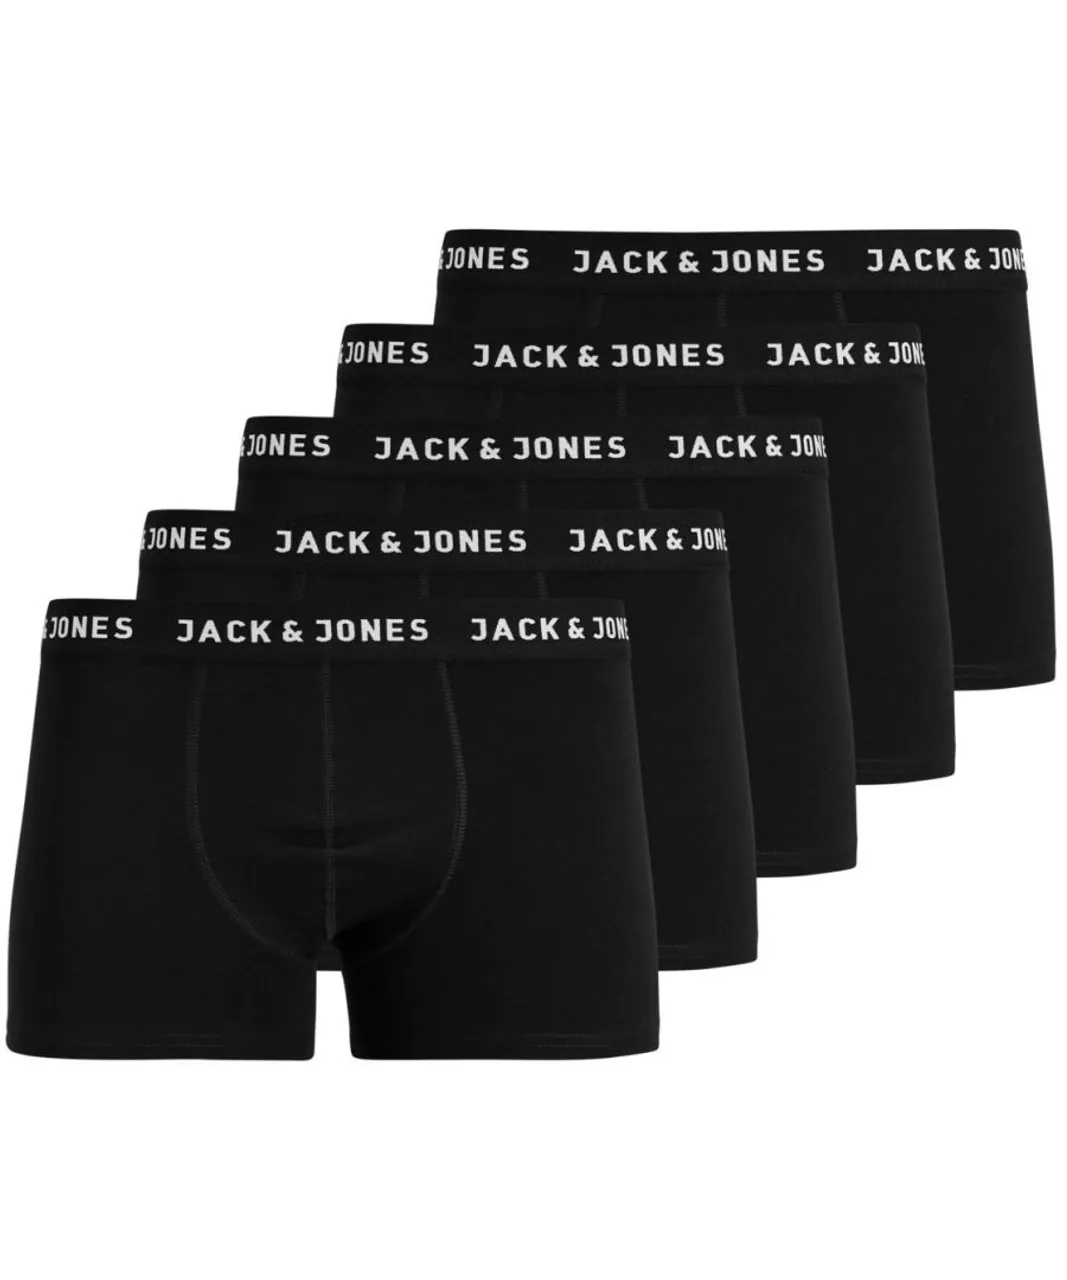 Jack & Jones Mens underpants - Black Cotton